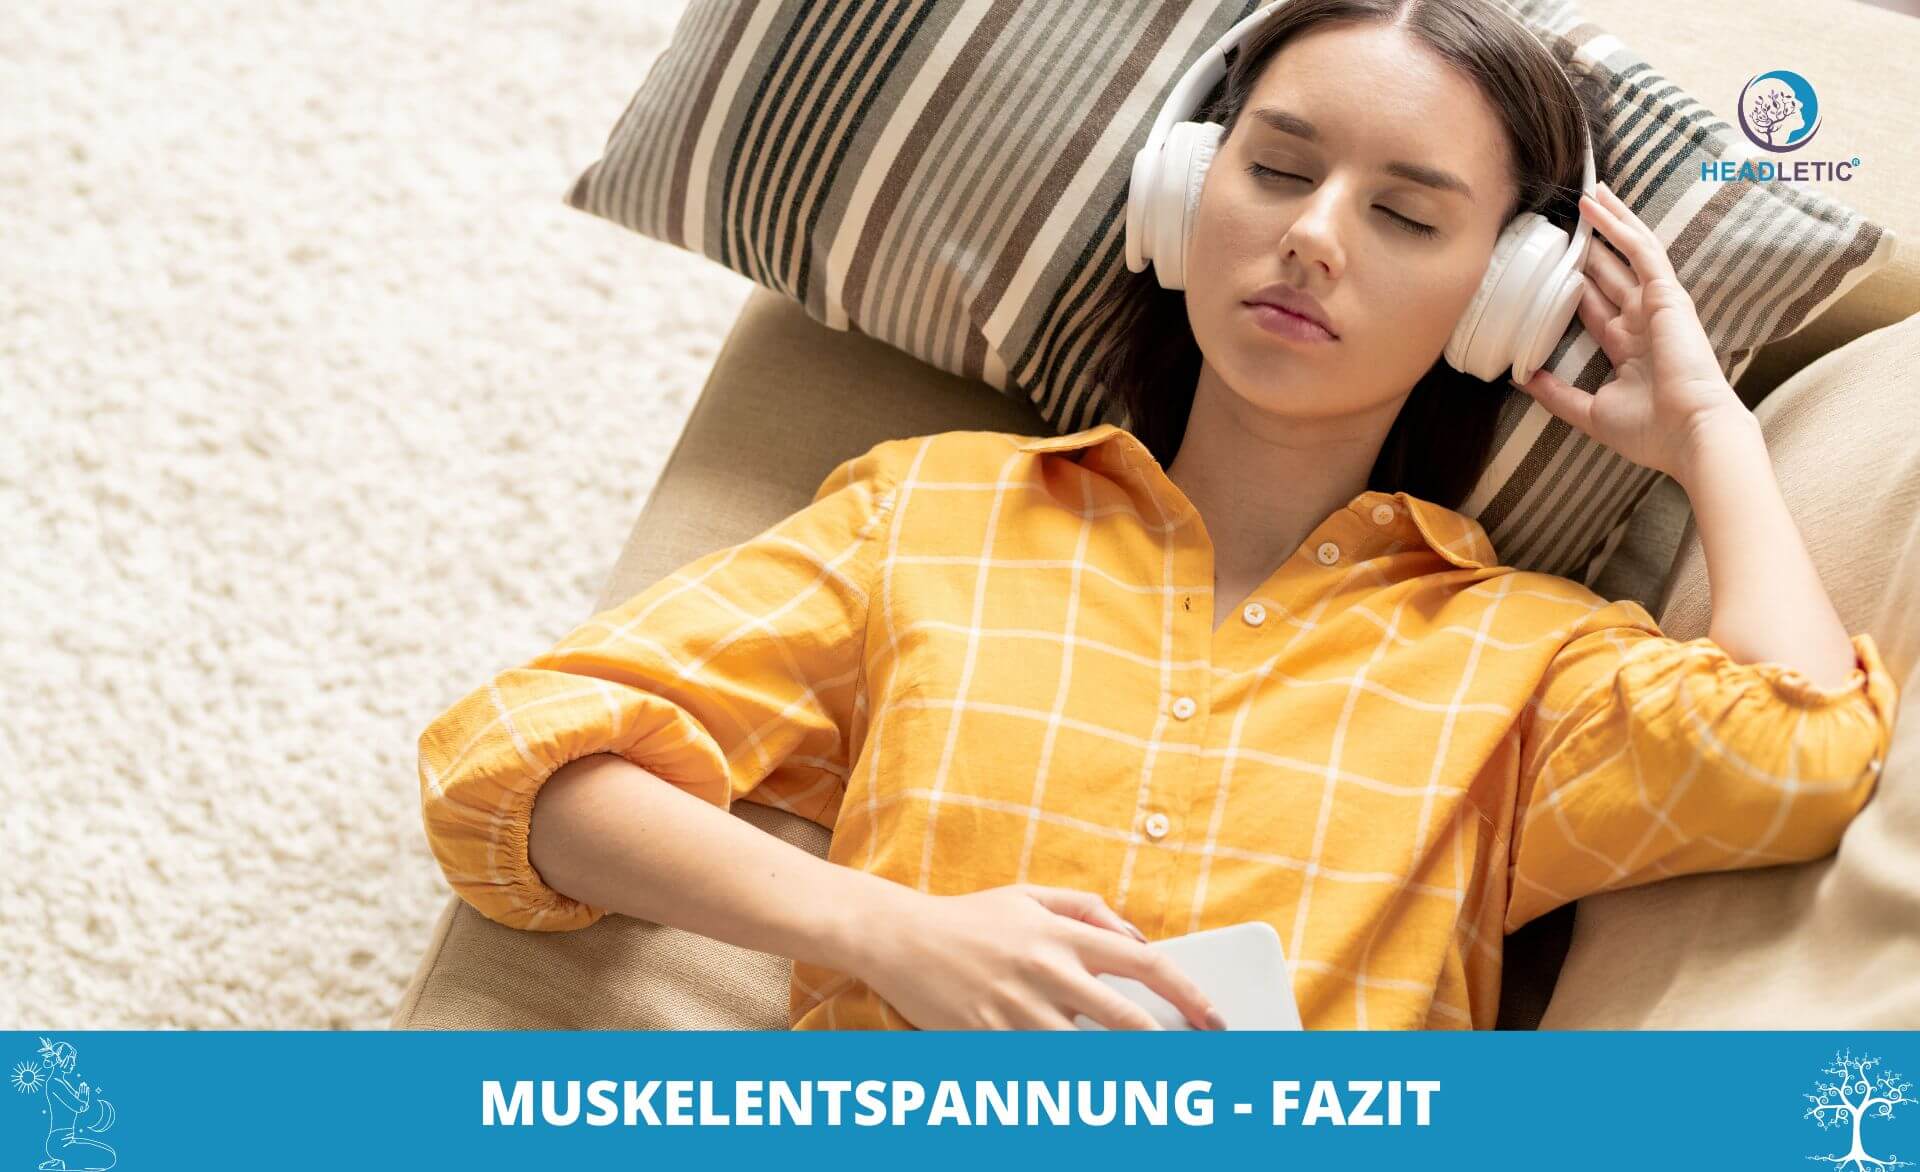 Eine Frau entspannt sich mit Kopfhörern auf einer Couch und folgt einer angeleiteten progressiven Muskelentspannung.